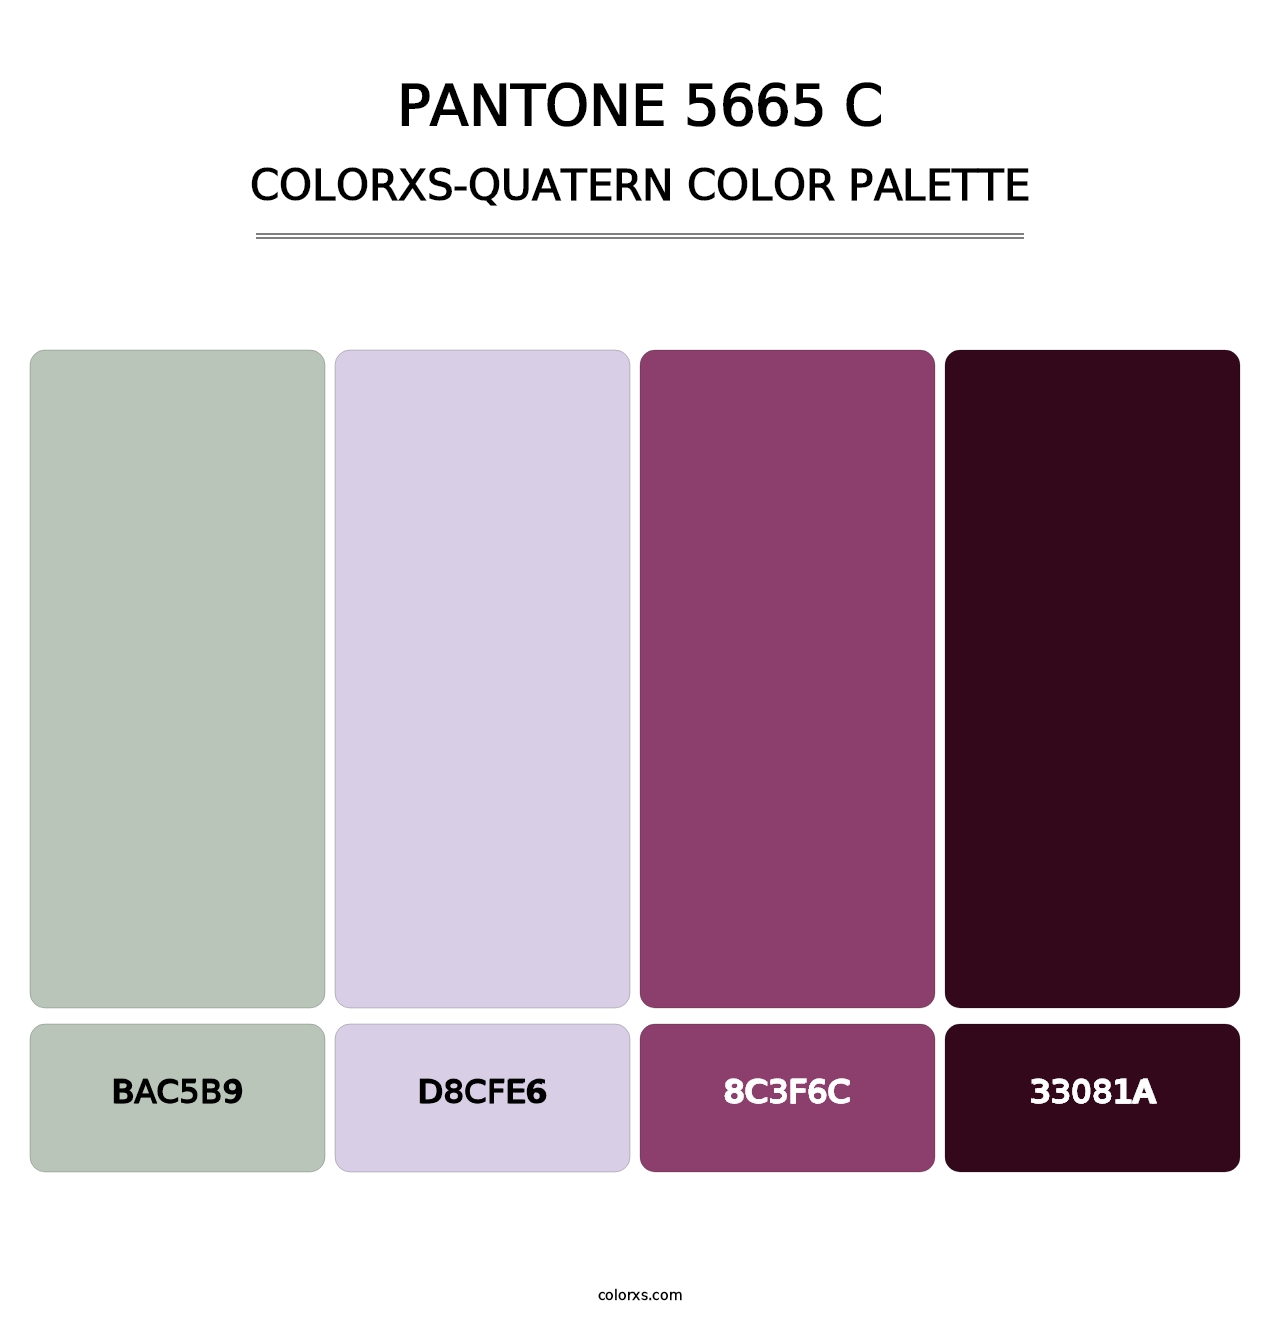 PANTONE 5665 C - Colorxs Quatern Palette